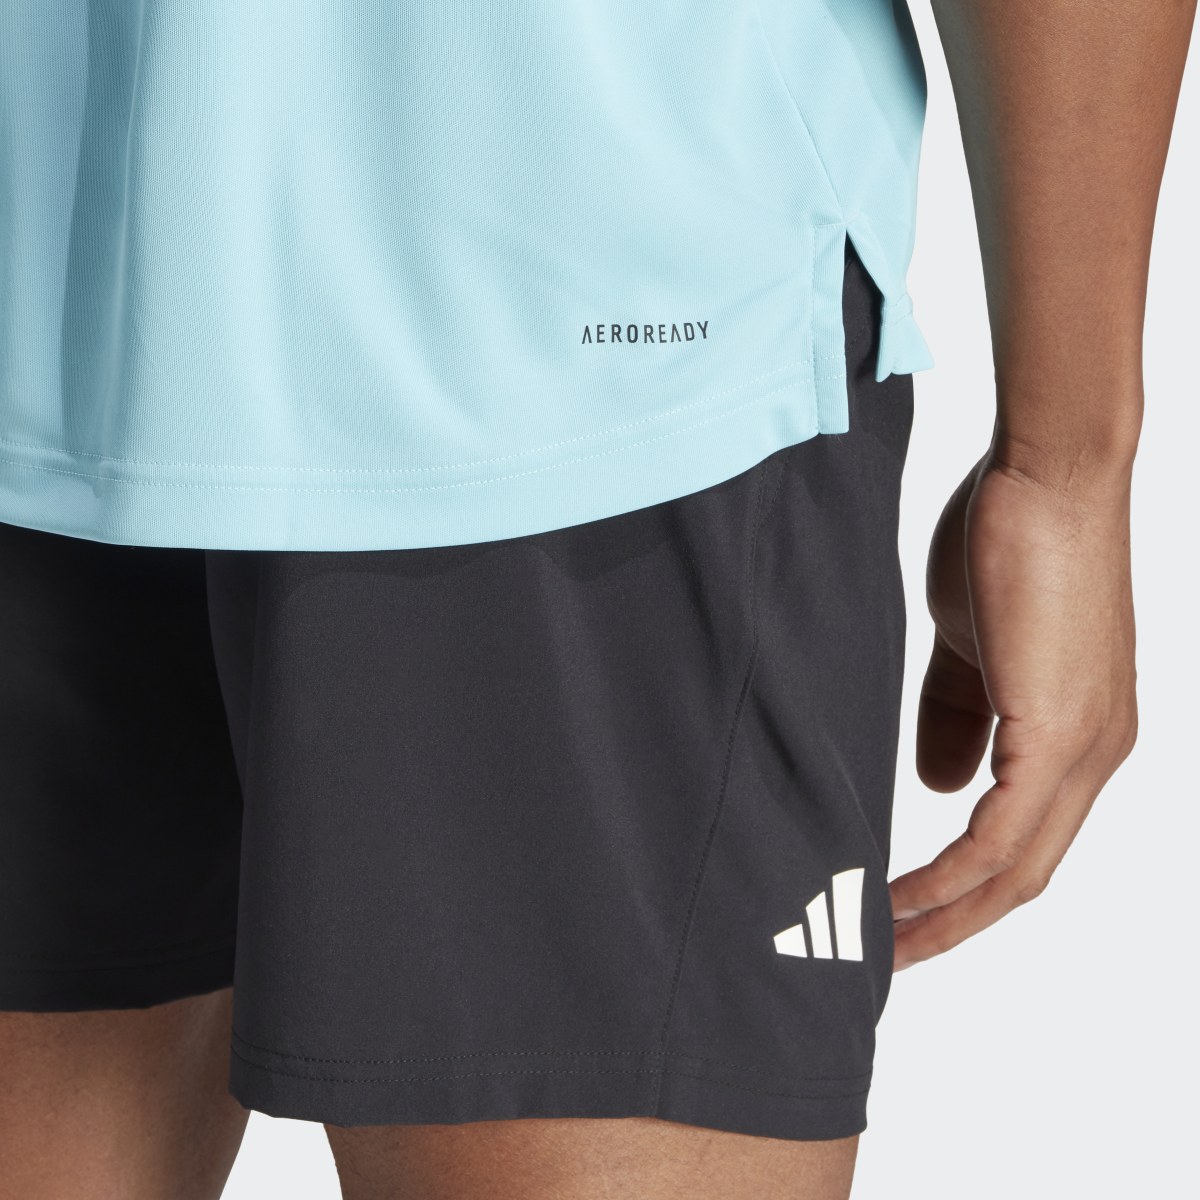 Adidas Club 3-Streifen Tennis Poloshirt. 7